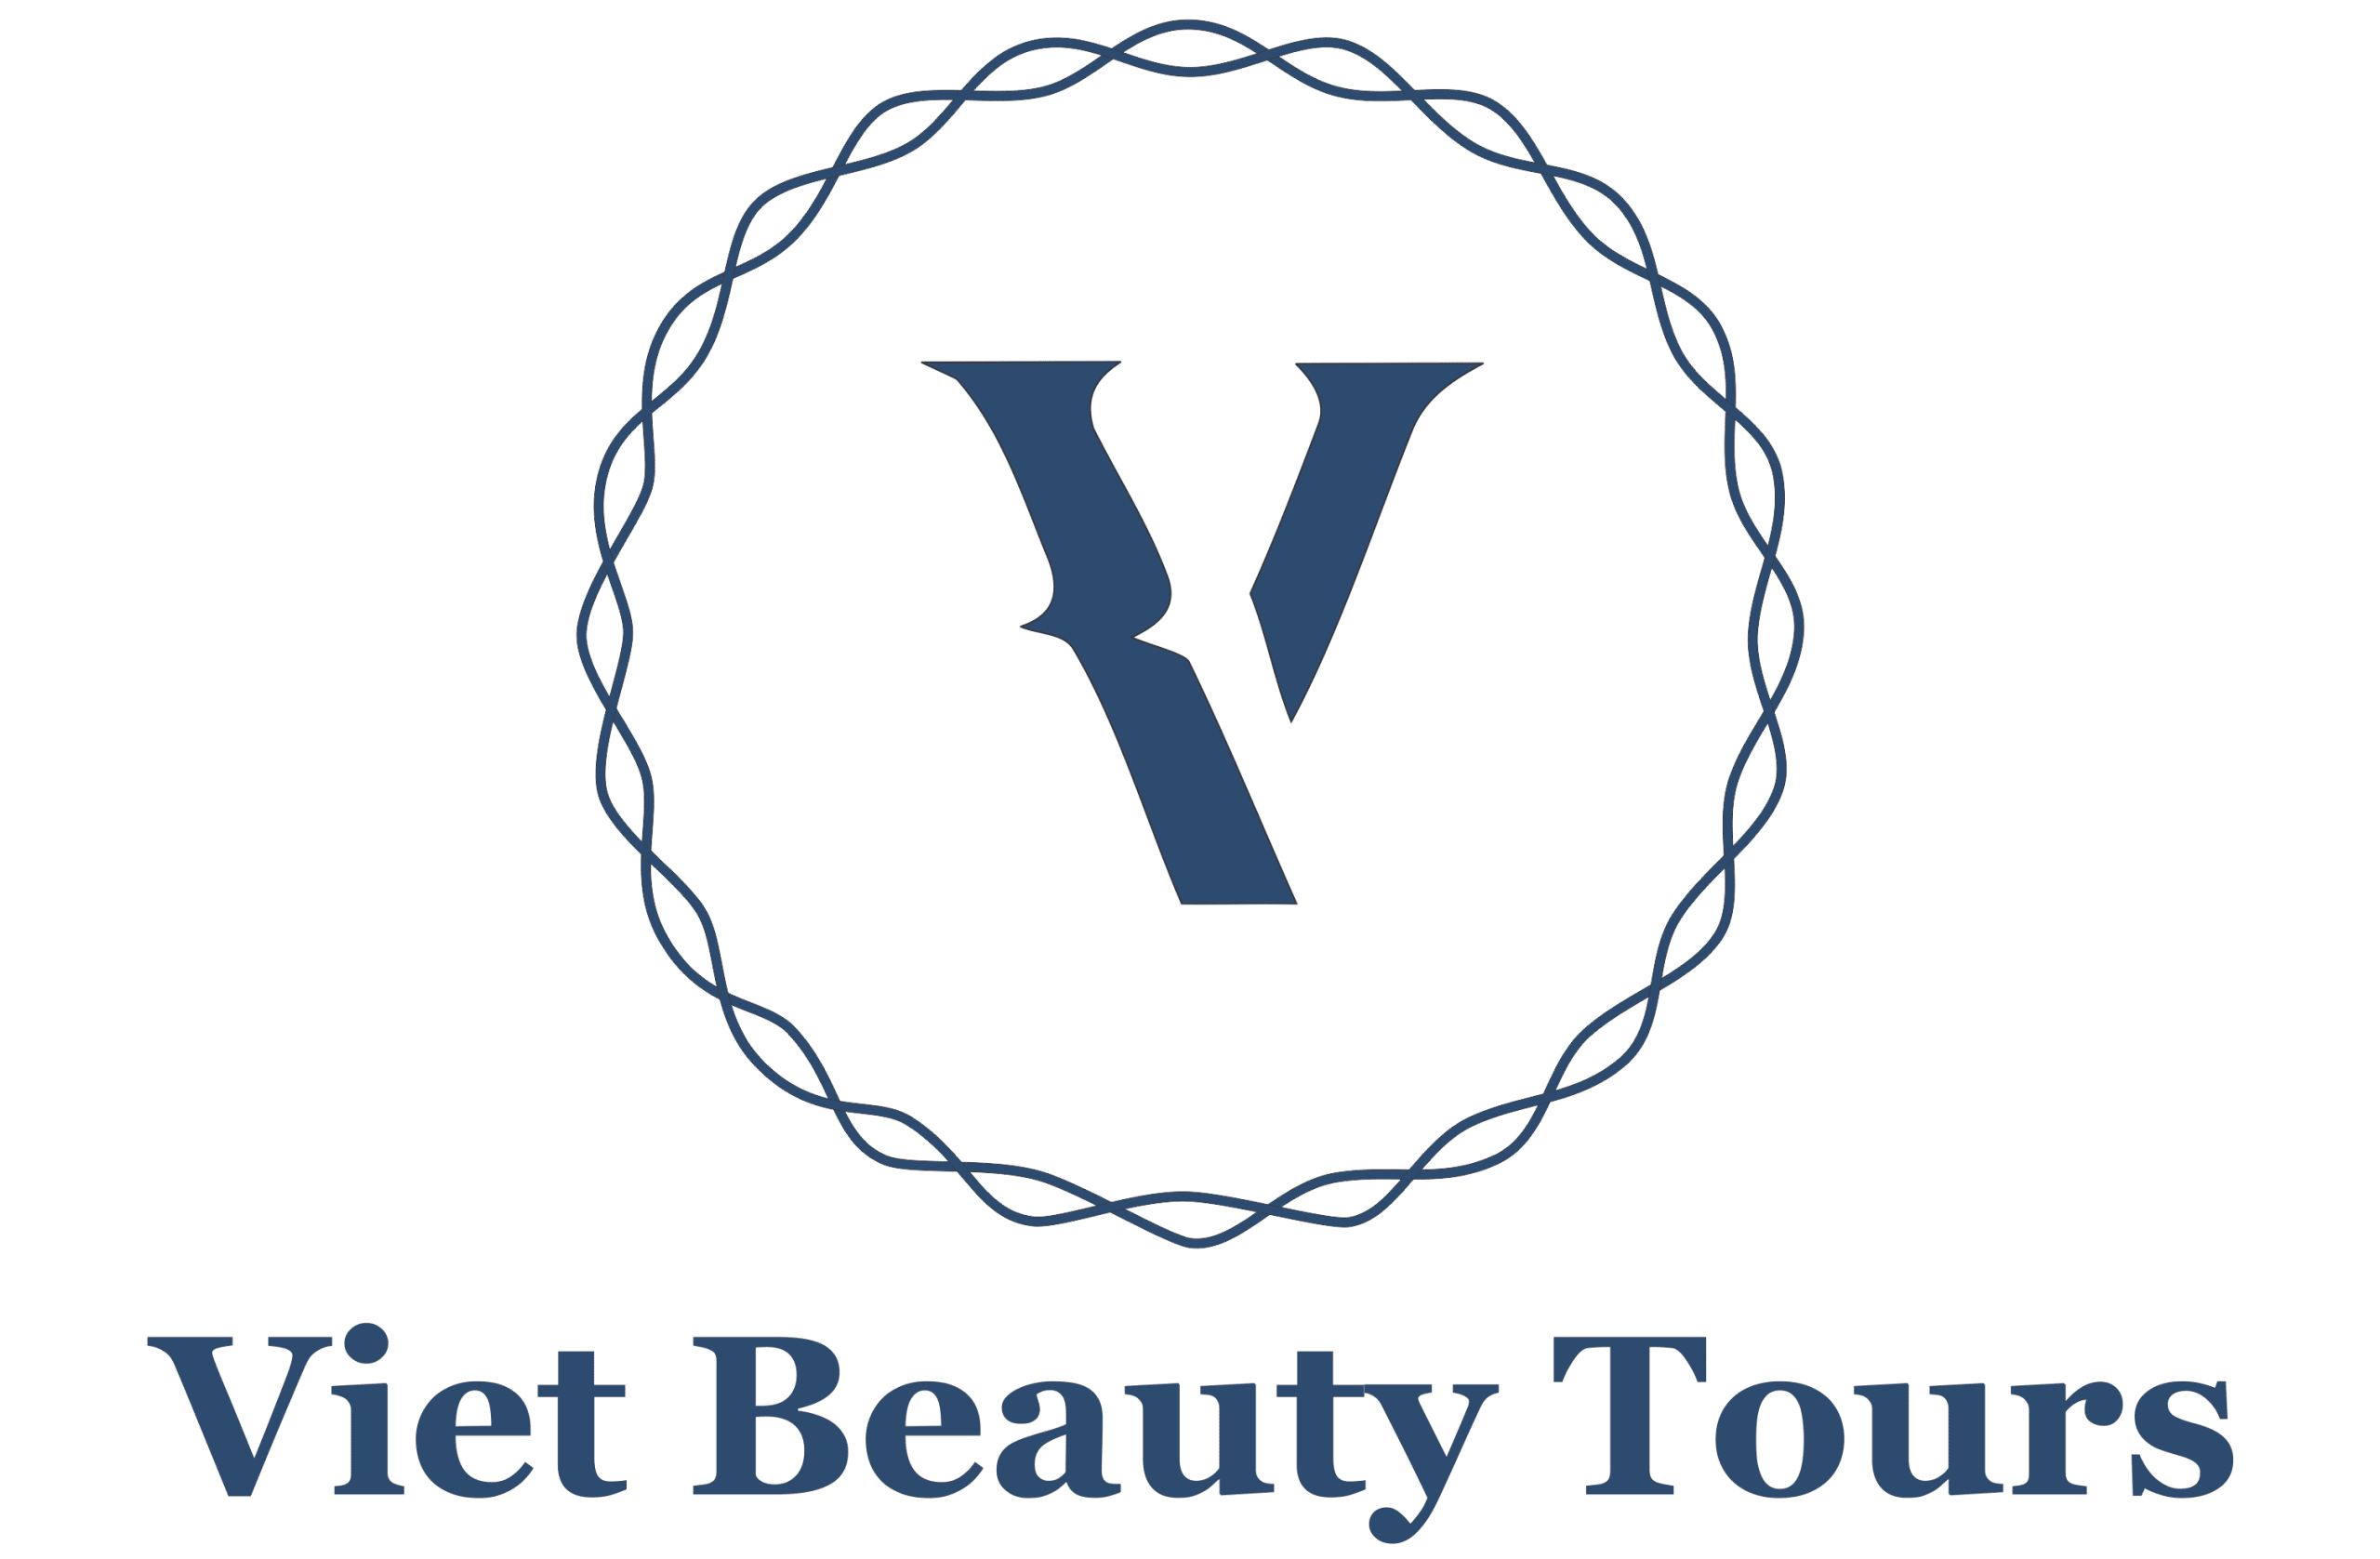 VIET BEAUTY TOURS